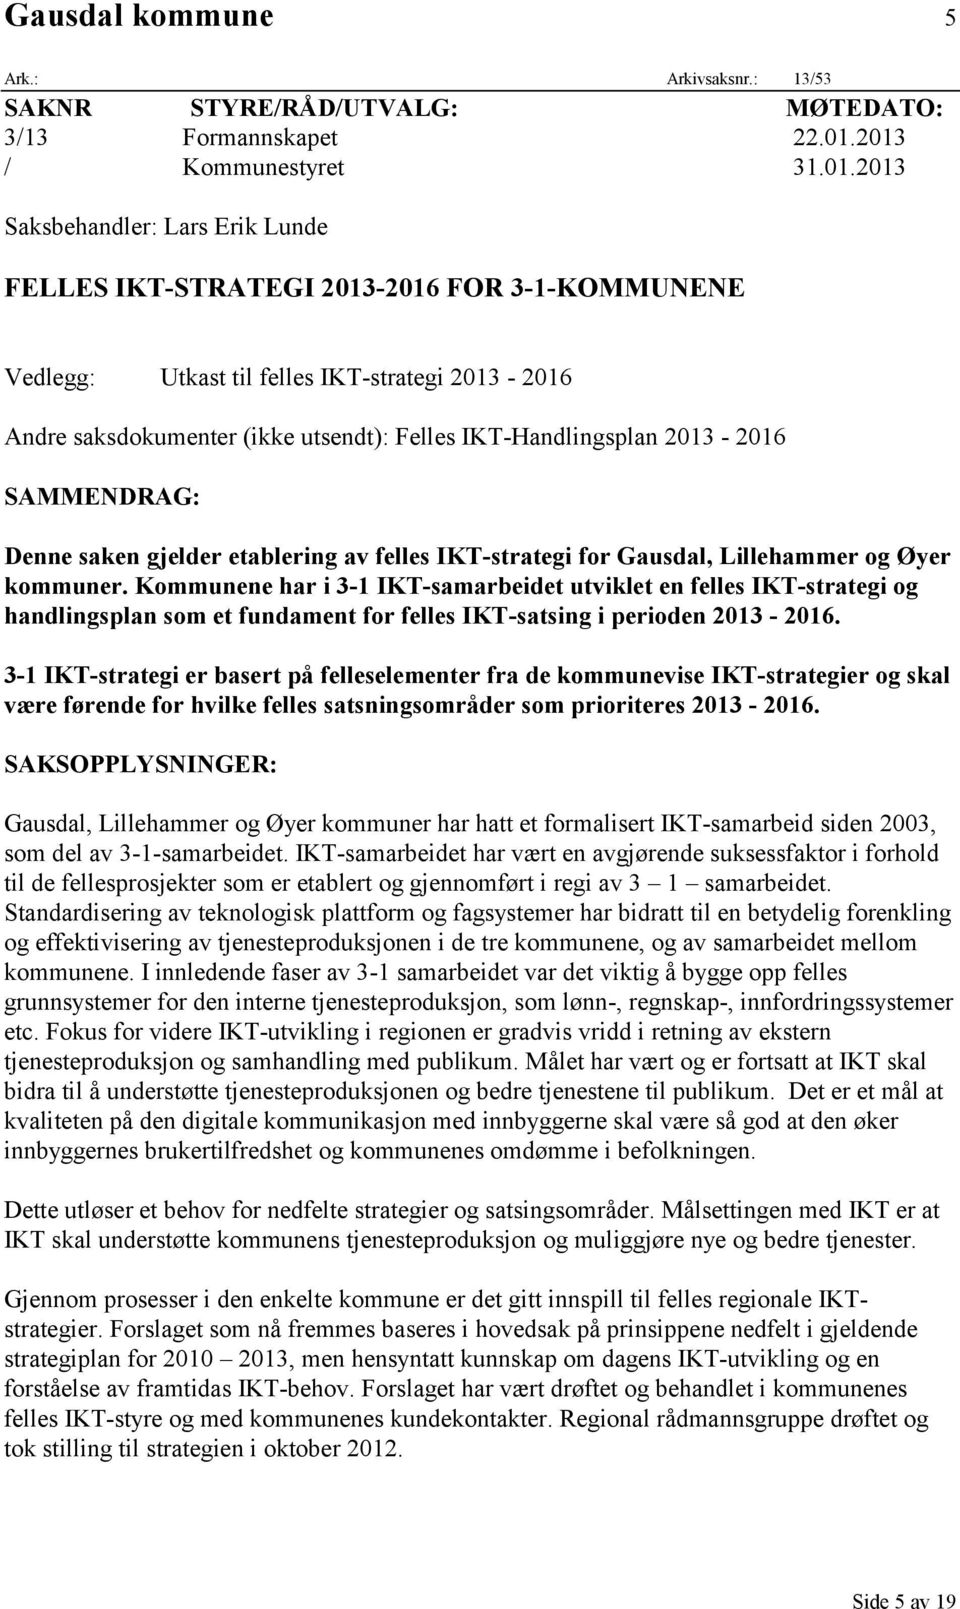 Felles IKT-Handlingsplan 2013-2016 SAMMENDRAG: Denne saken gjelder etablering av felles IKT-strategi for Gausdal, Lillehammer og Øyer kommuner.